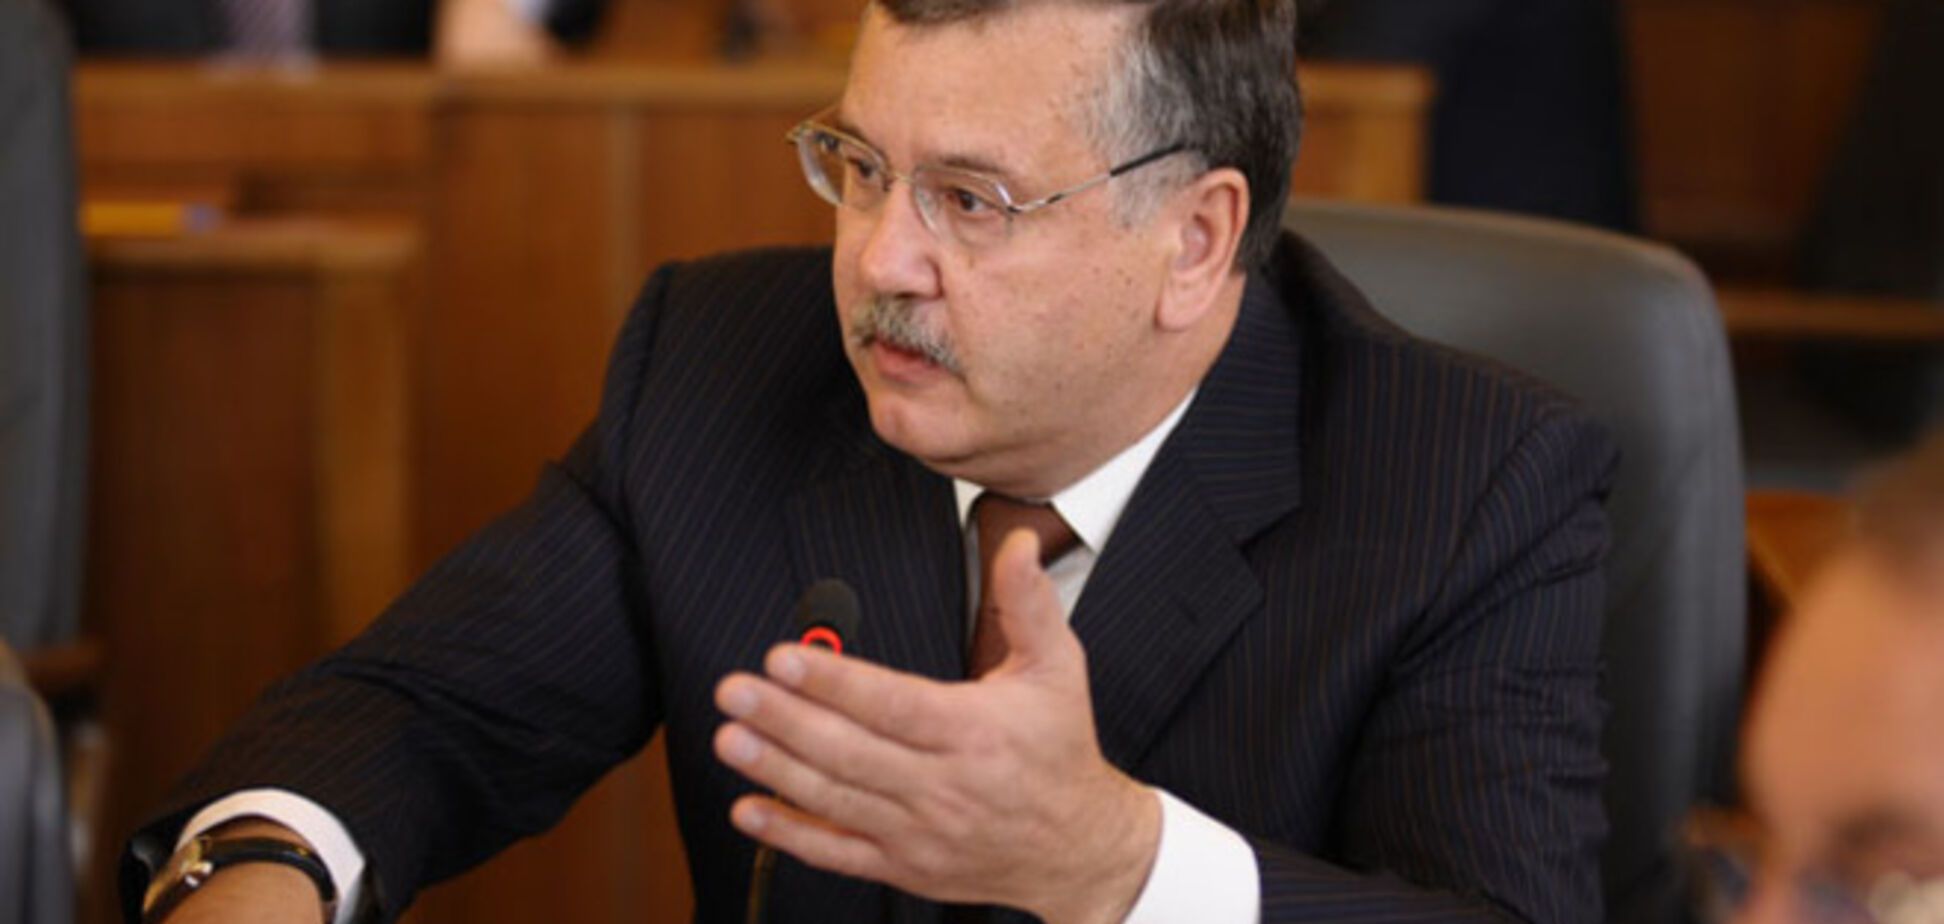 Гриценко судится с ЦИК из-за 'несправедливого' распределения должностей в ОИК